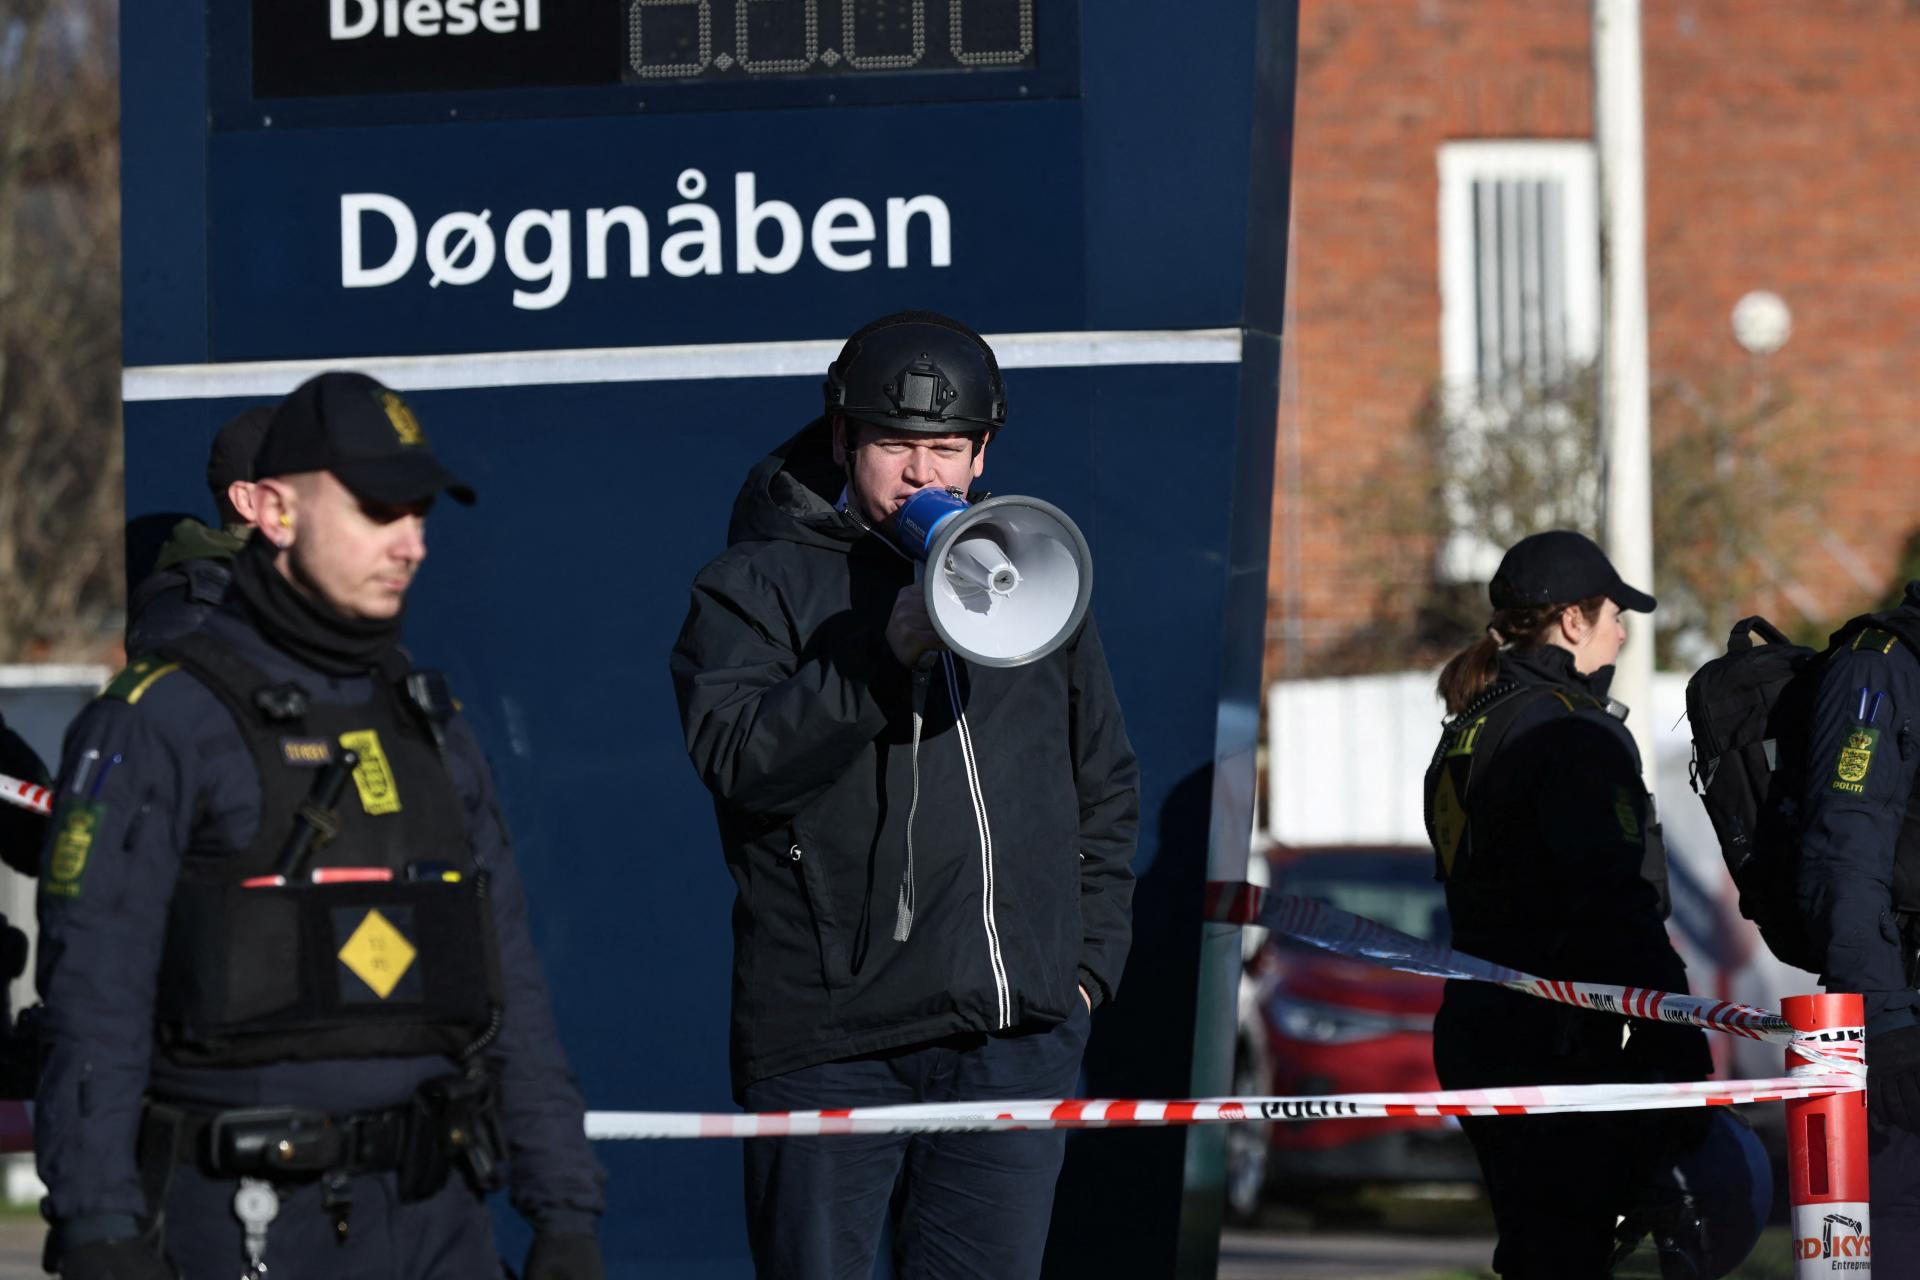 El ultraderechista Rasmus Paludan quemó el Corán frente a la mezquita esta vez en Dinamarca